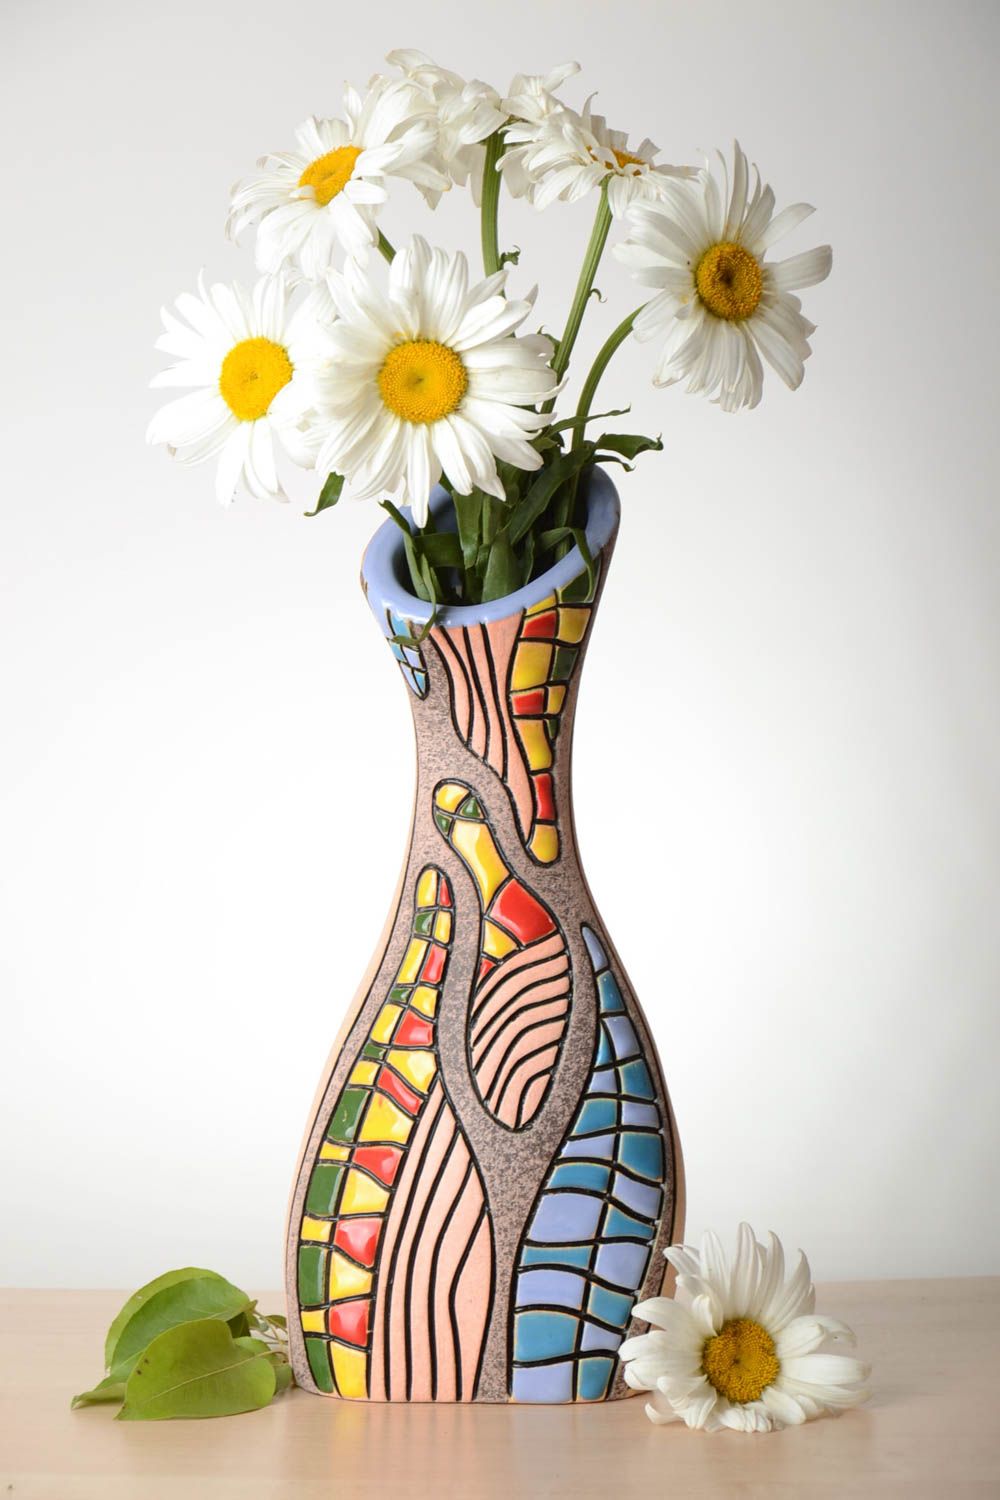 BUY 14 inches art style ceramic flower vase handmade pottery 2 lb ...